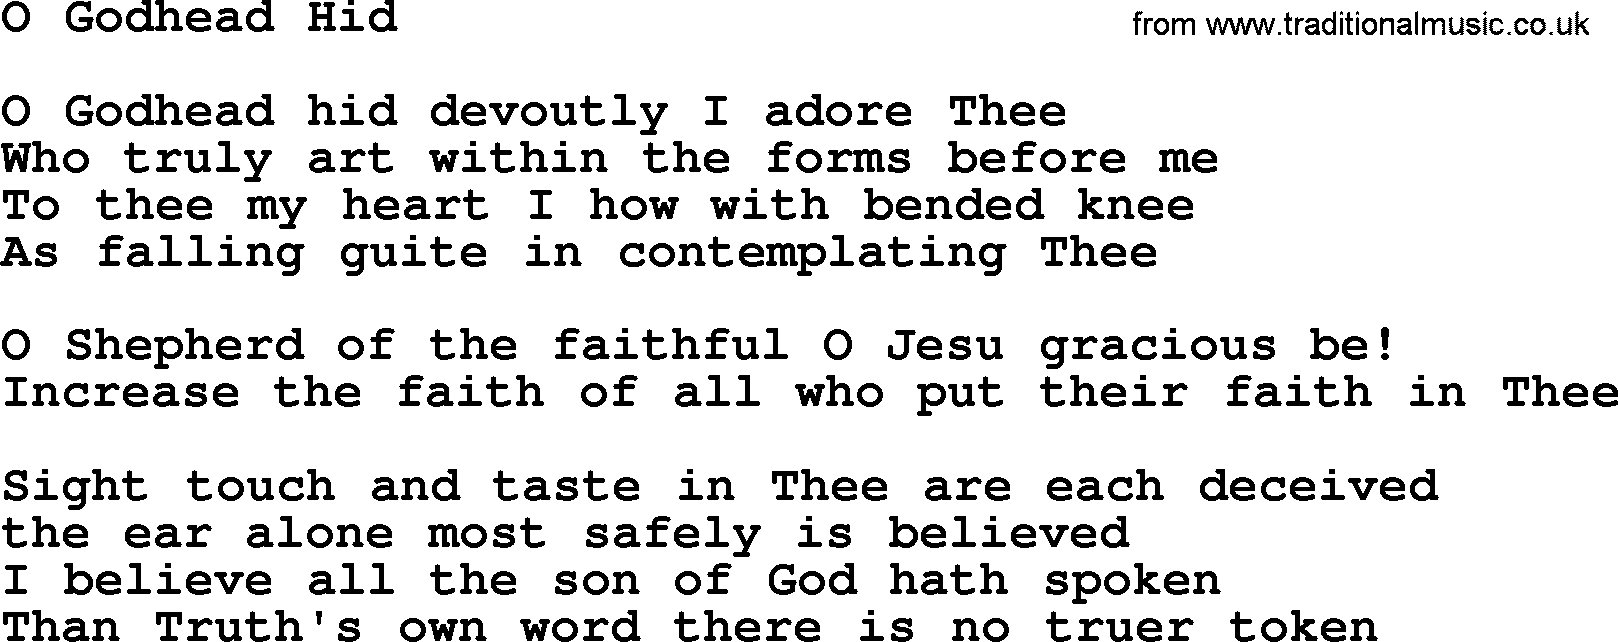 Catholic Hymn: O Godhead Hid lyrics with PDF